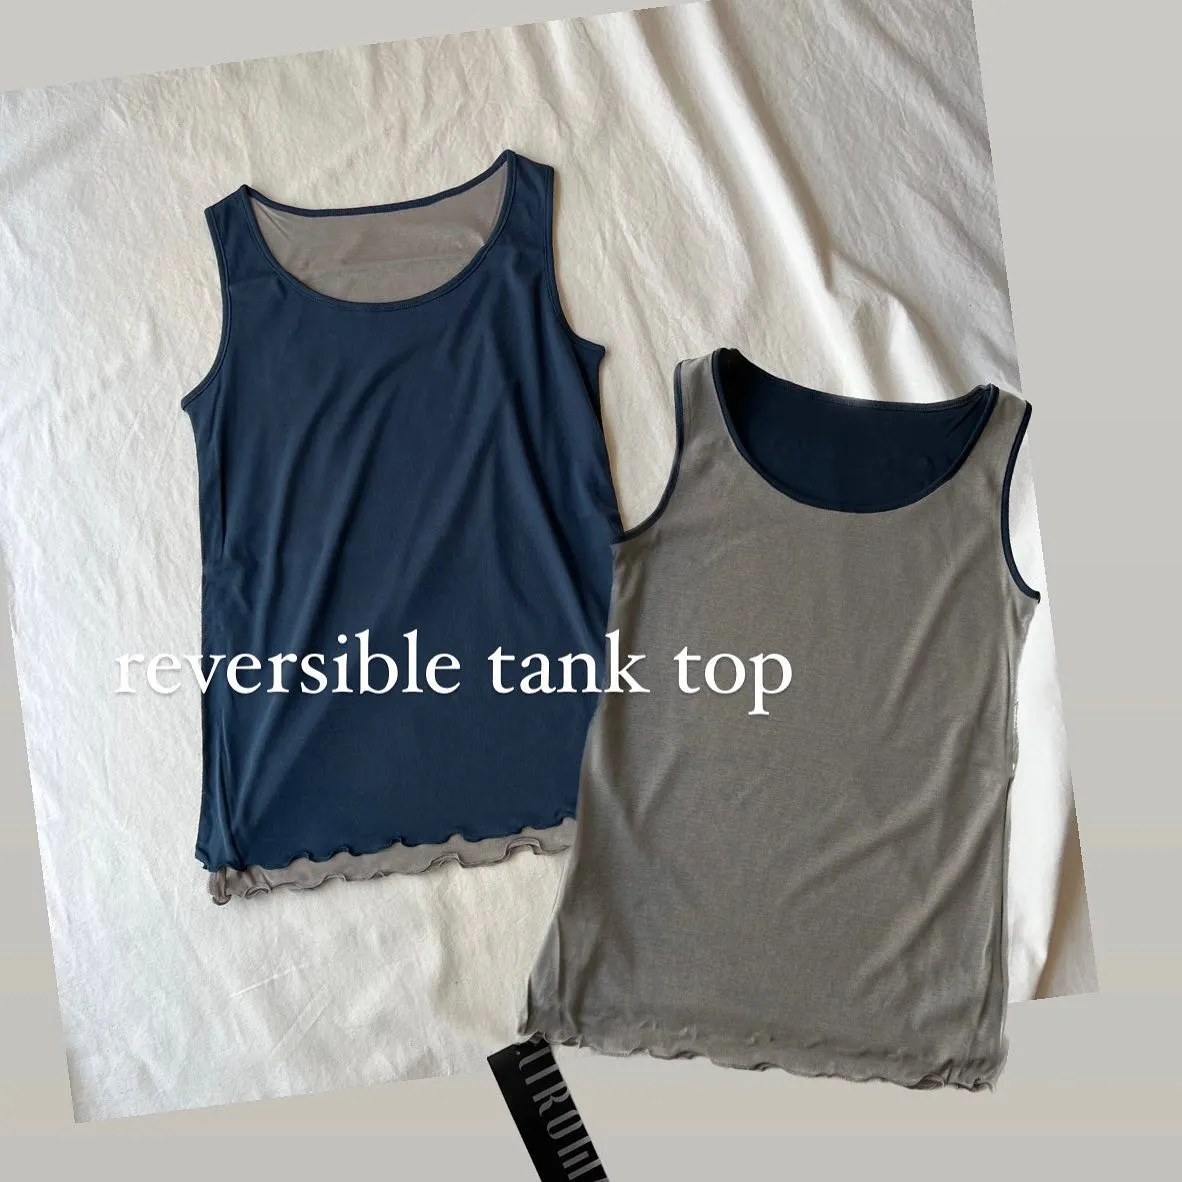 reversible tank top